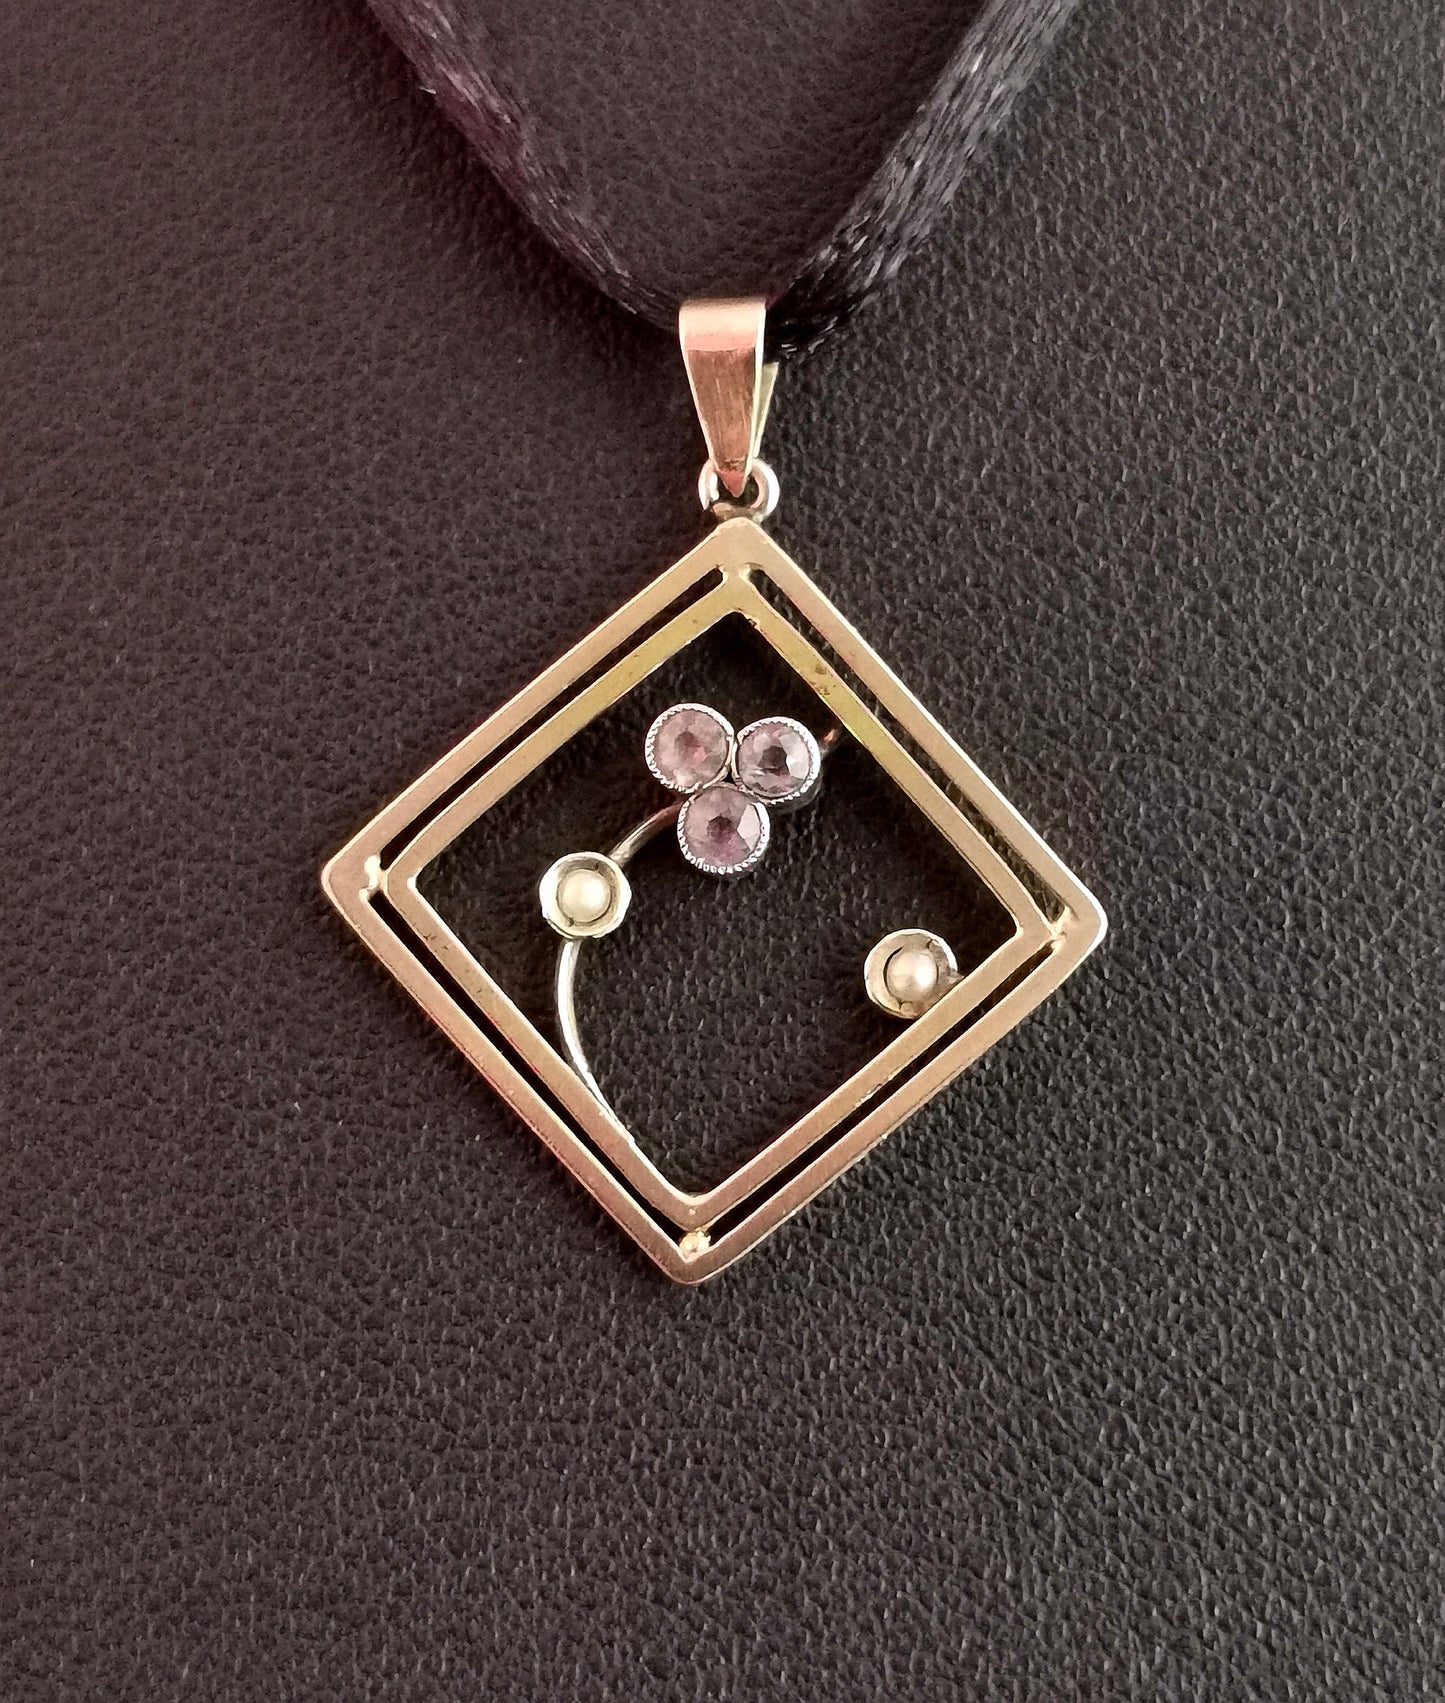 Antique Art Nouveau Amethyst and pearl pendant, 9ct gold, trefoil, floral